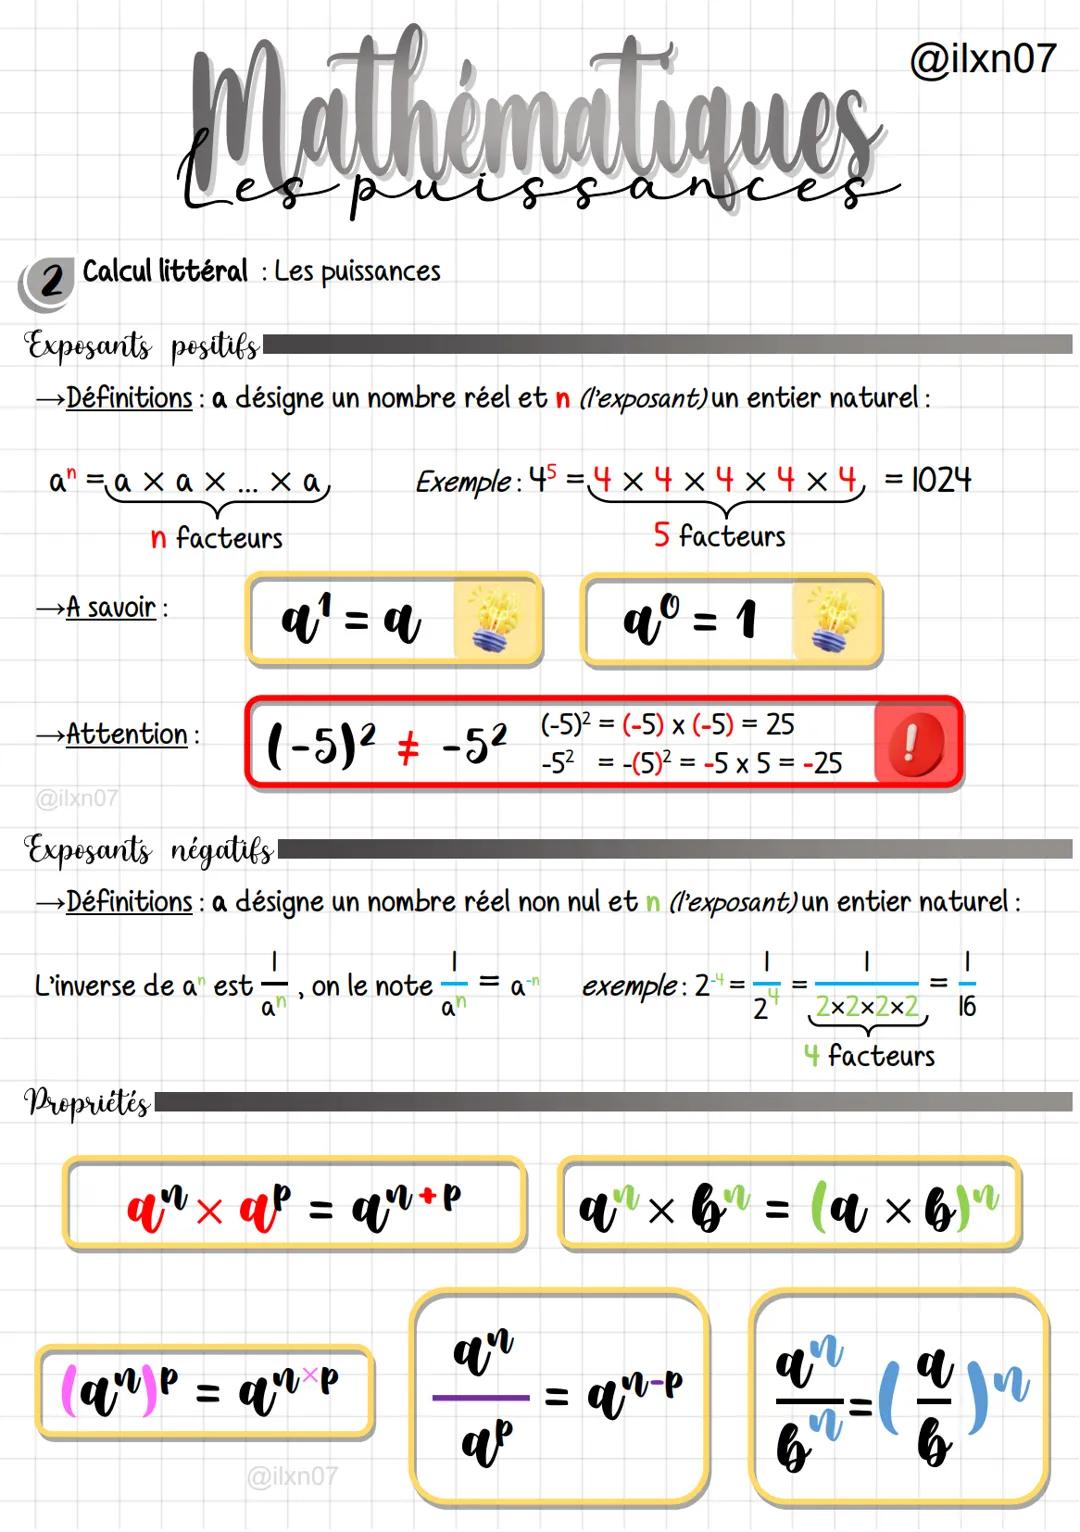 Mathématiques
2 Calcul littéral: Les puissances
Exposants positifs!
→Définitions : a désigne un nombre réel et n (l'exposant) un entier natu